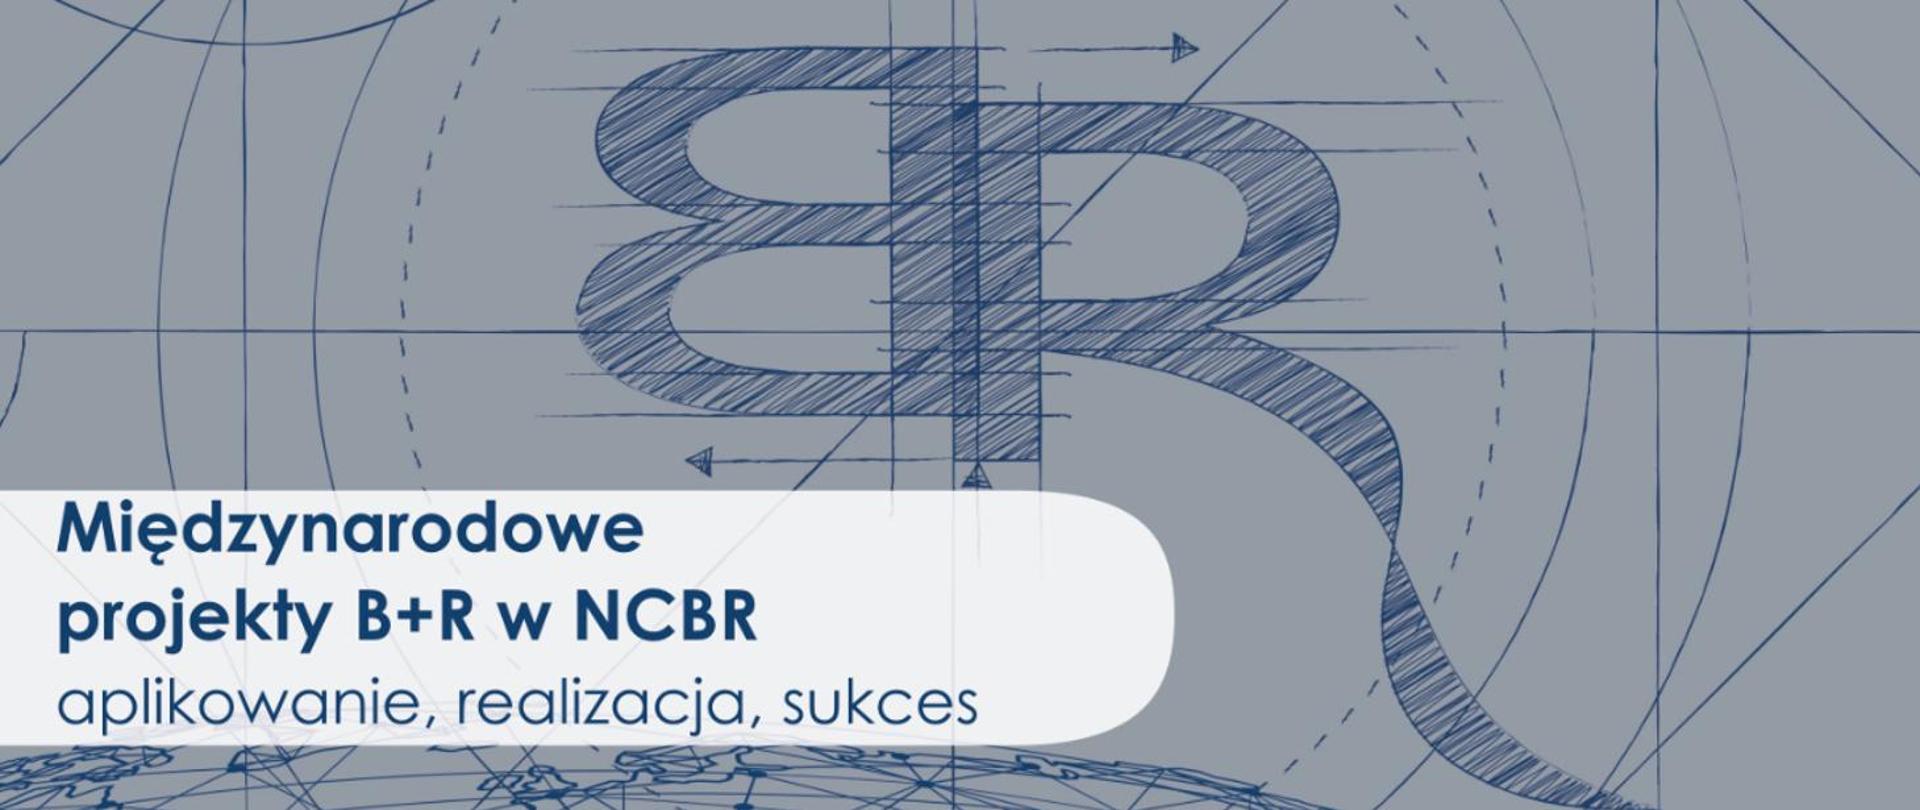 Międzynarodowe projekty B+R w NCBR